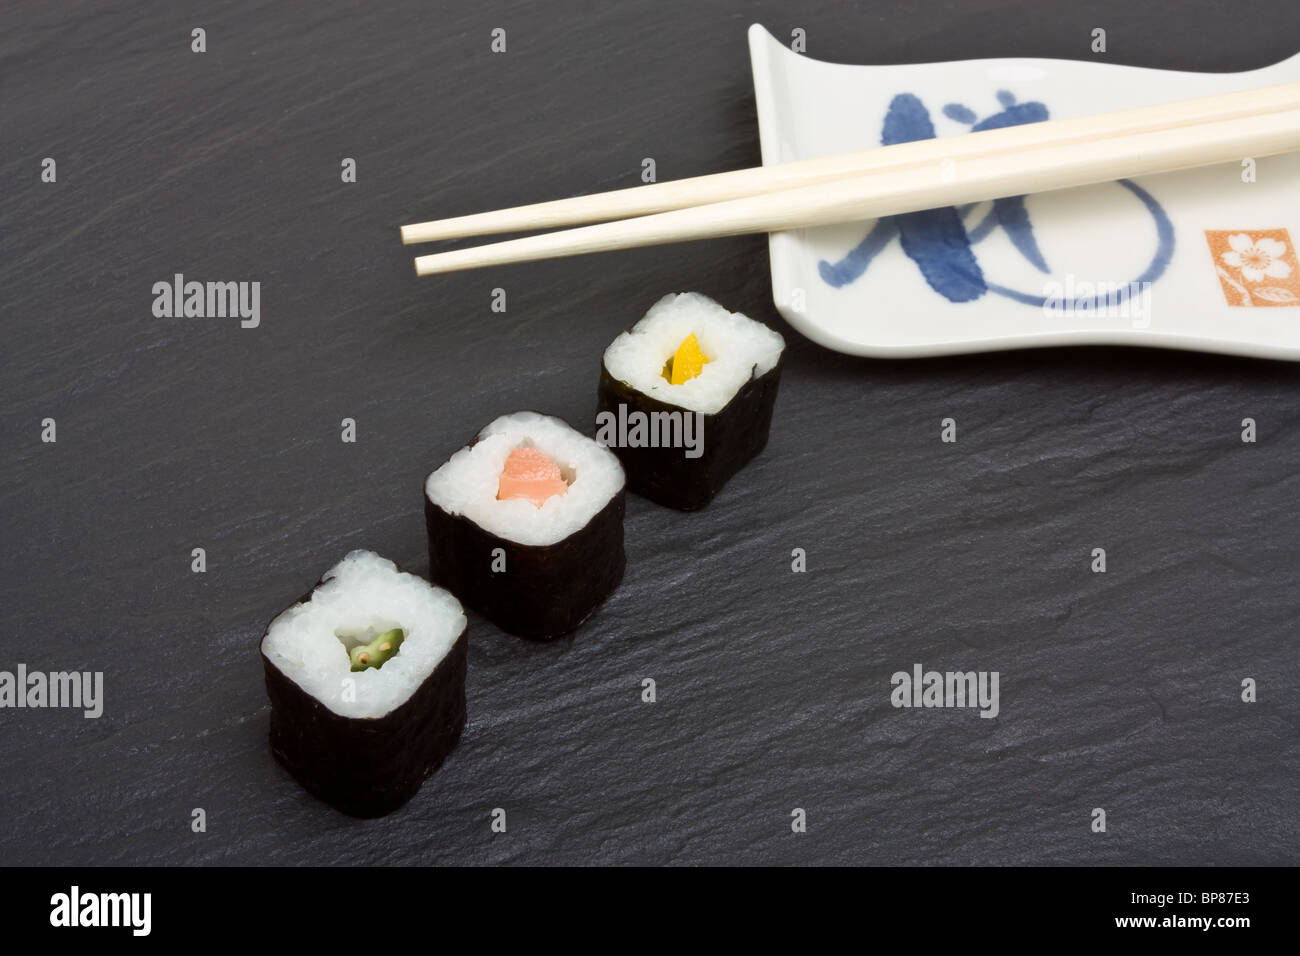 Sushi and chopsticks on dark grey slate background. Stock Photo